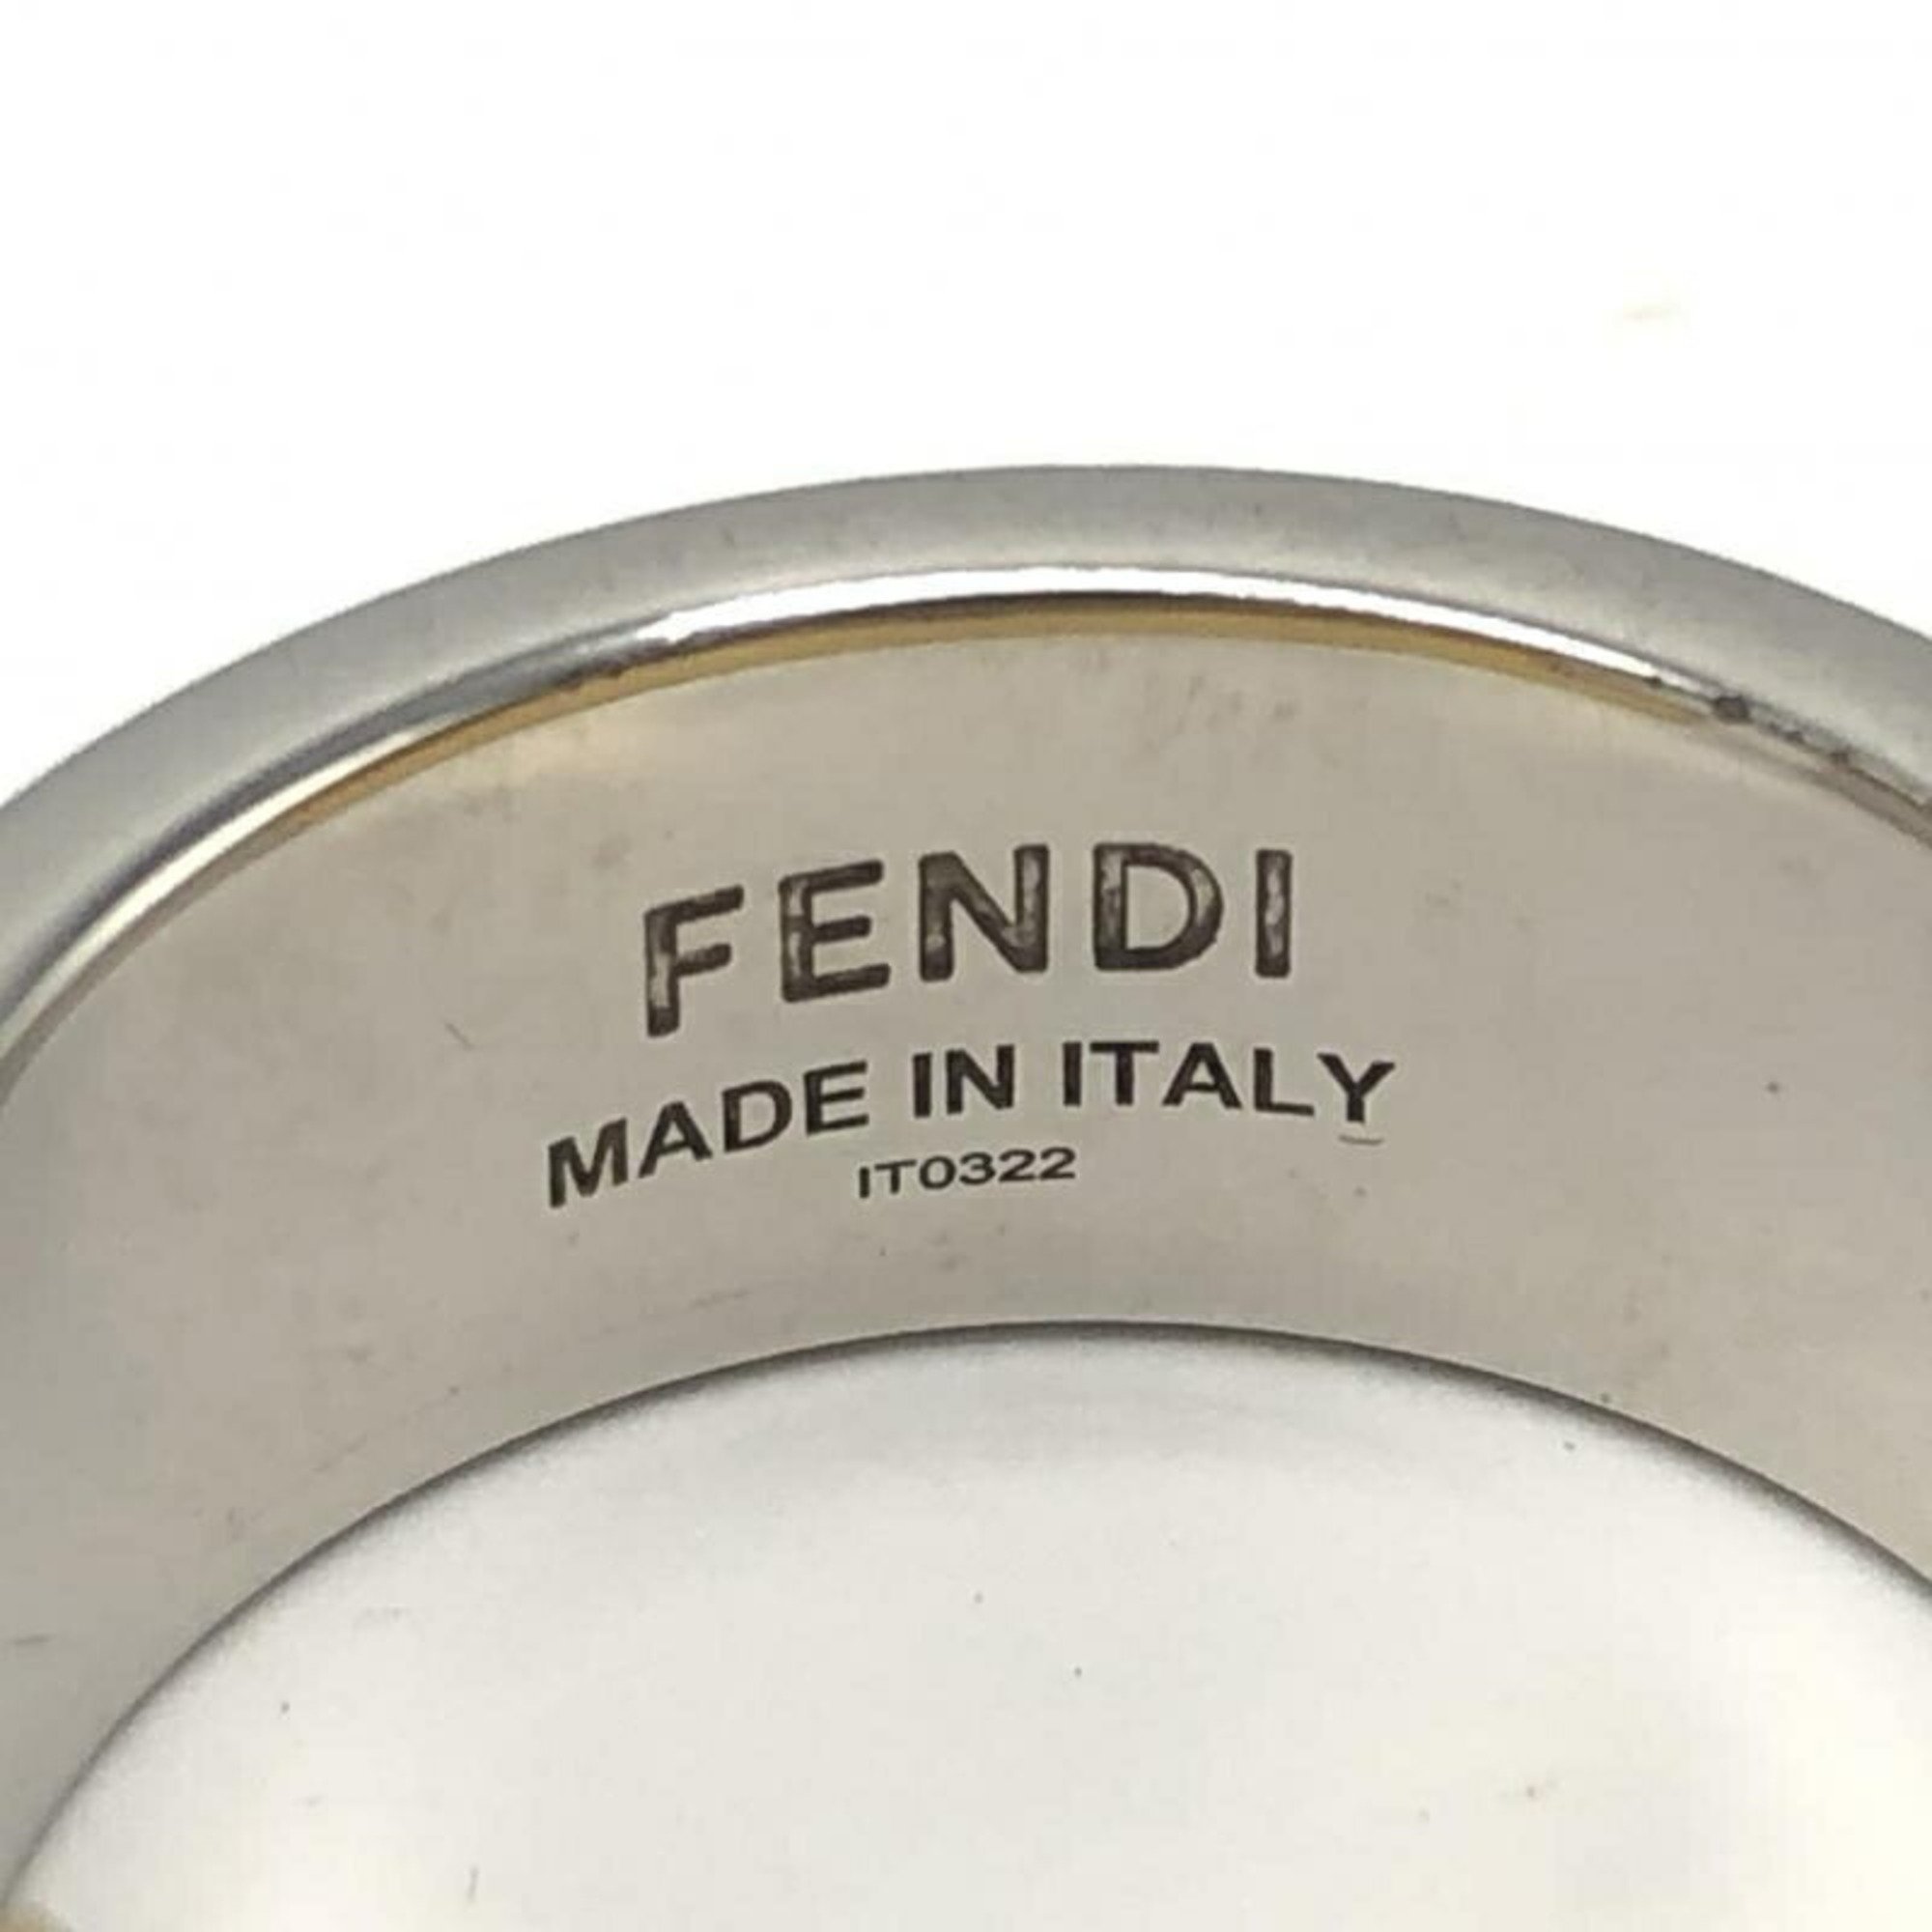 FENDI F0F0N Ring 7AJ193 B08 M Gold Color Silver Fendi